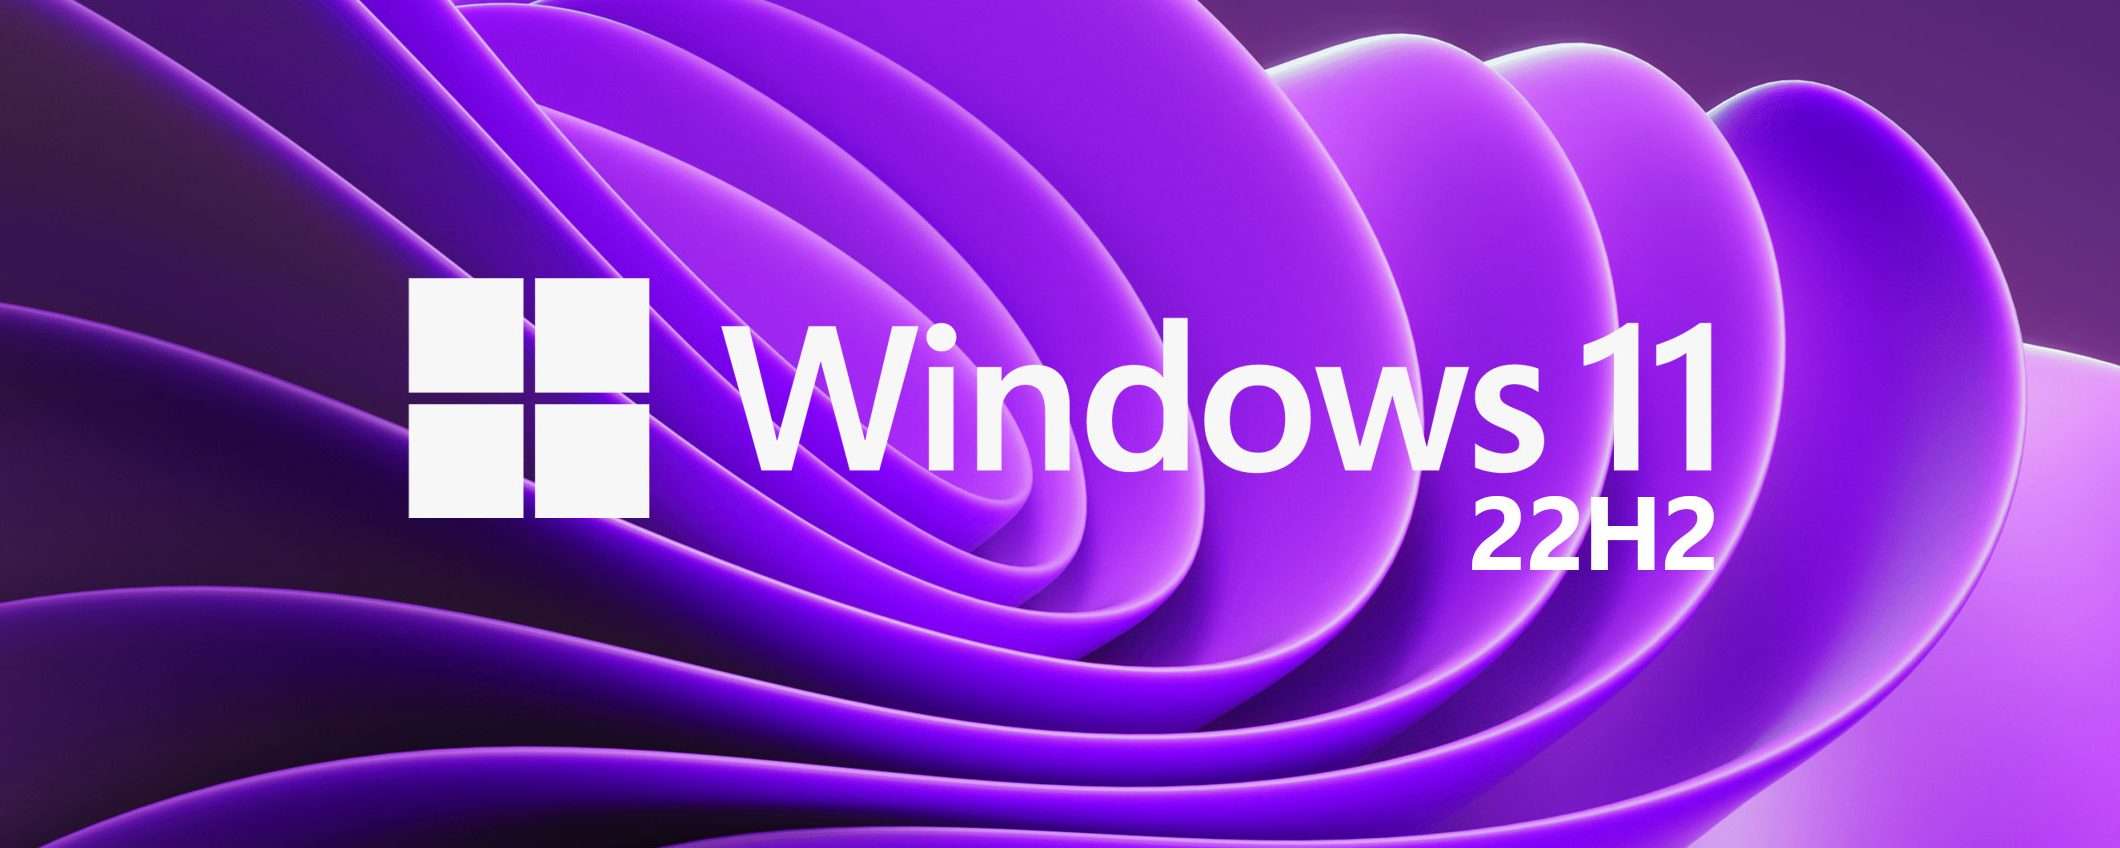 Windows 11 e 10 22H2: spuntano altri due bug (update)